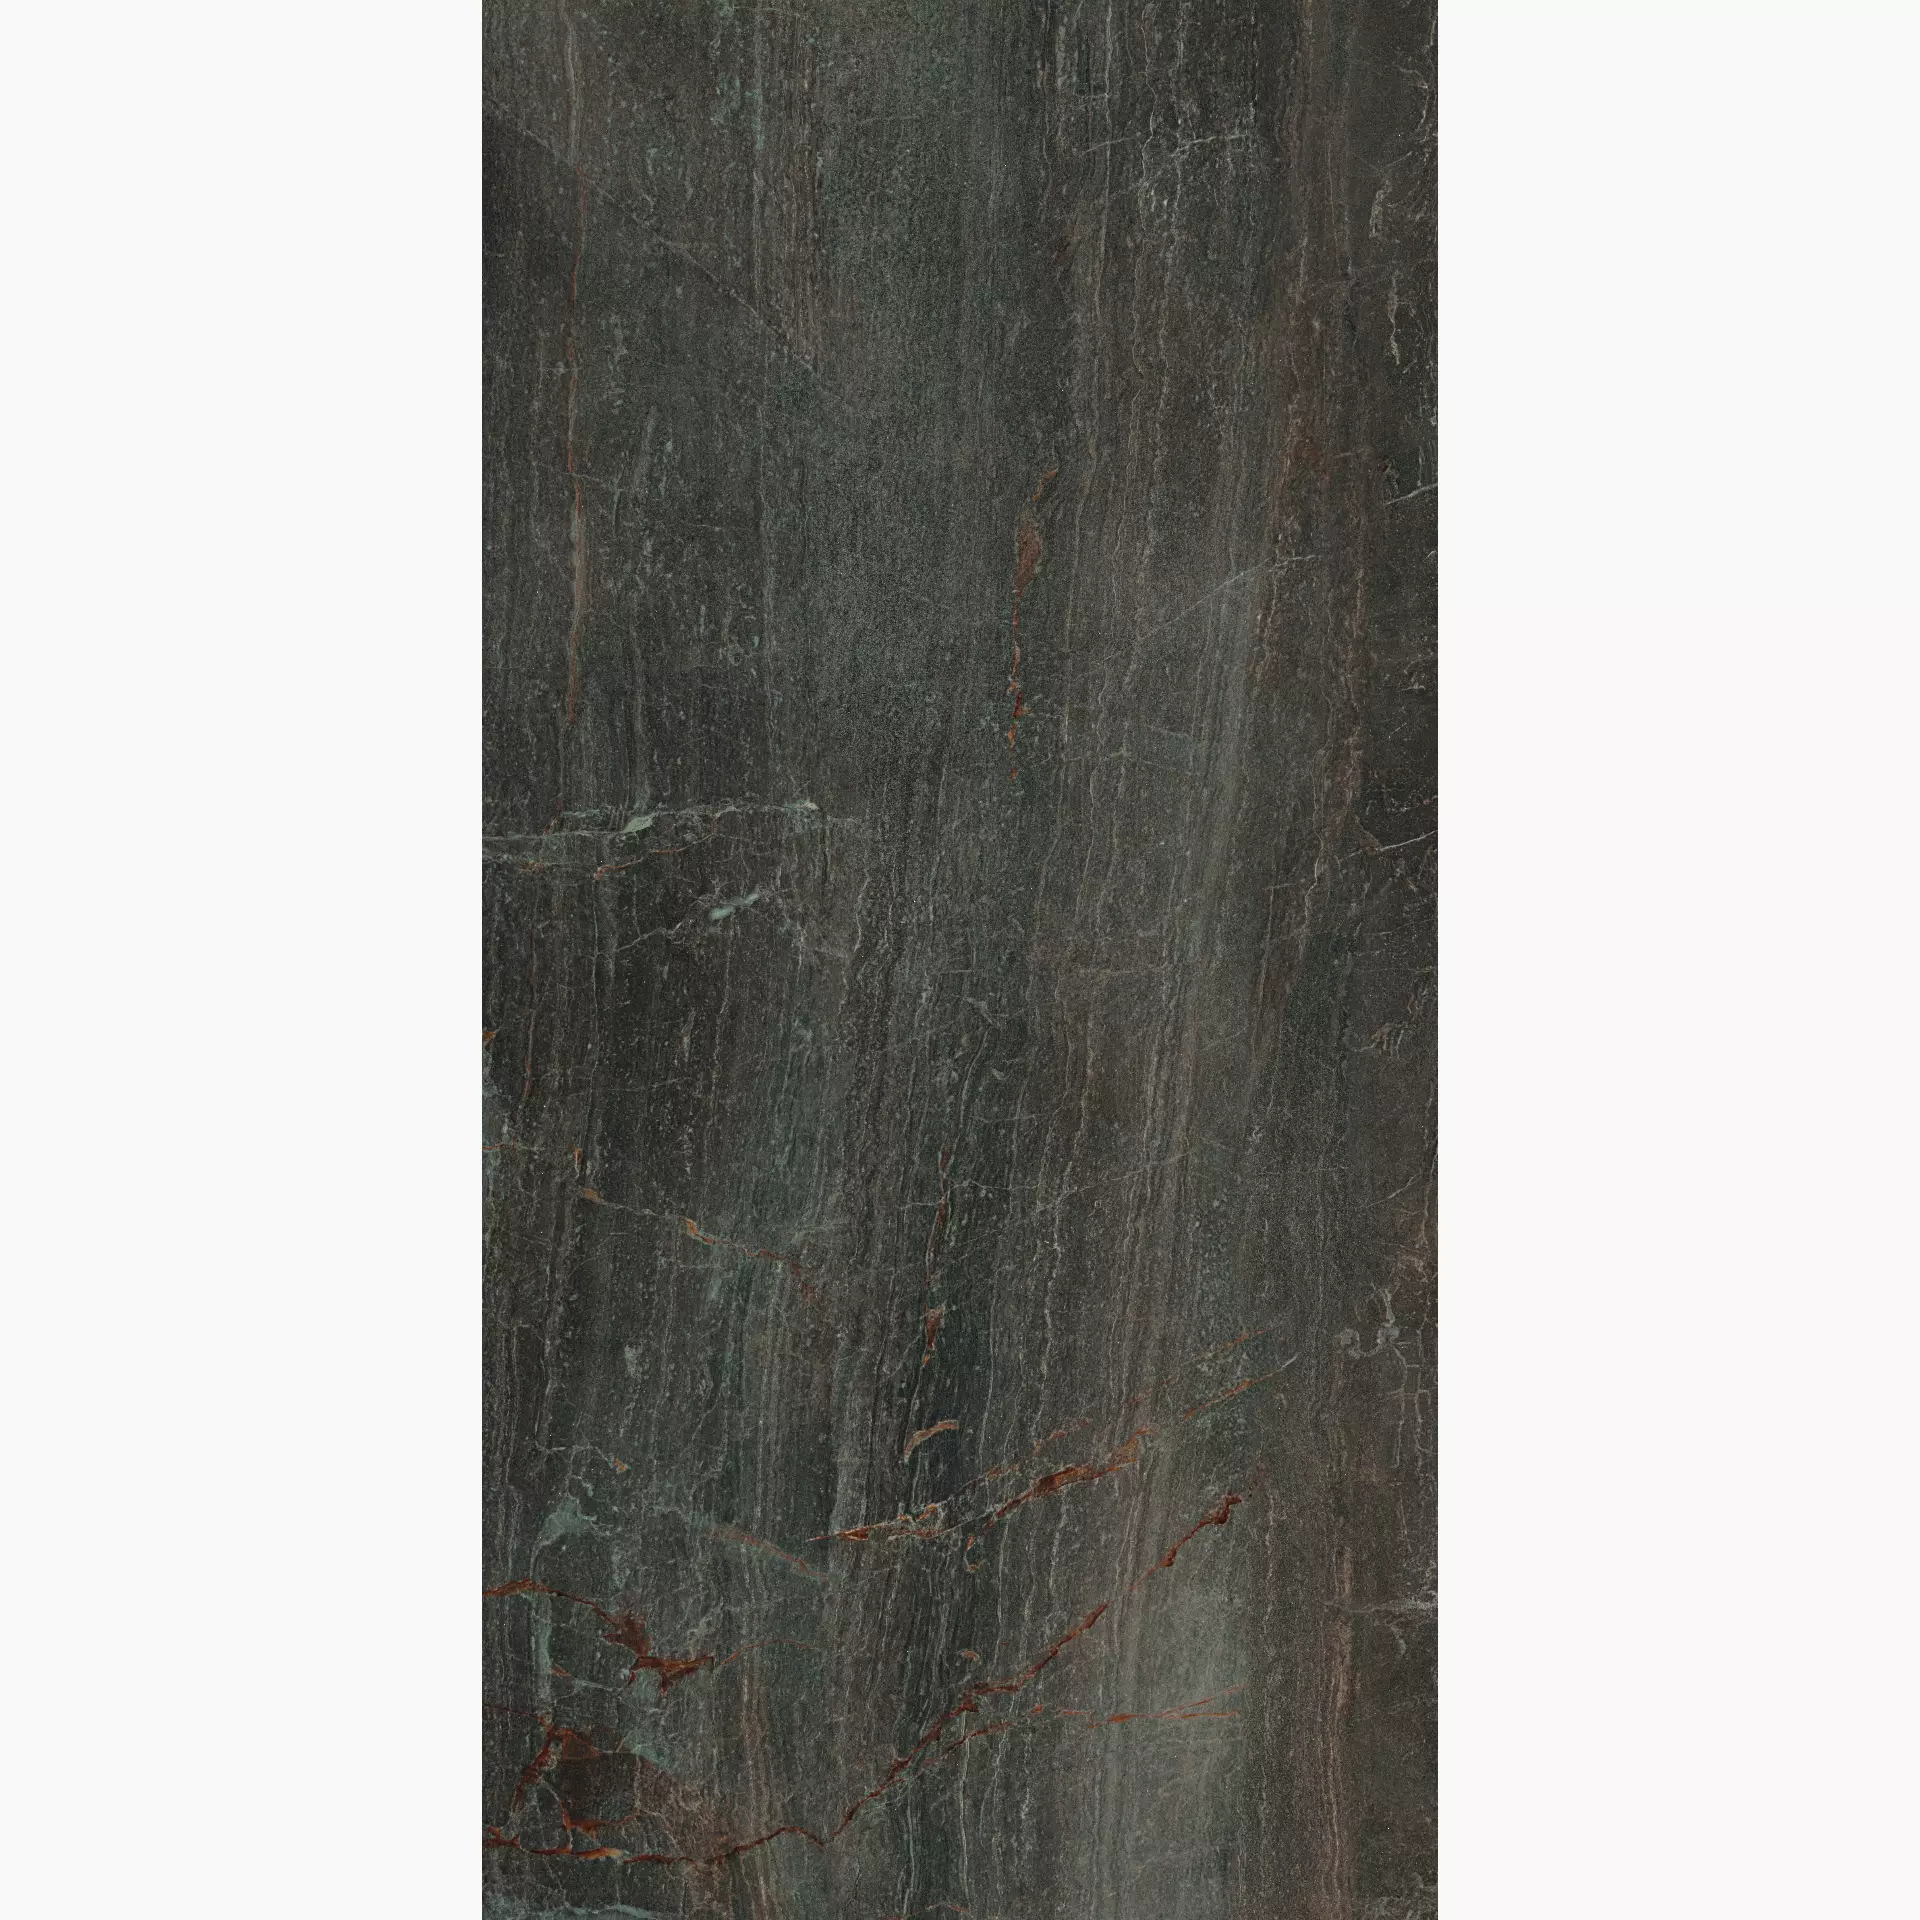 Serenissima Fossil Bruno Lux Bruno 1066566 glaenzend 60x120cm rektifiziert 9,5mm